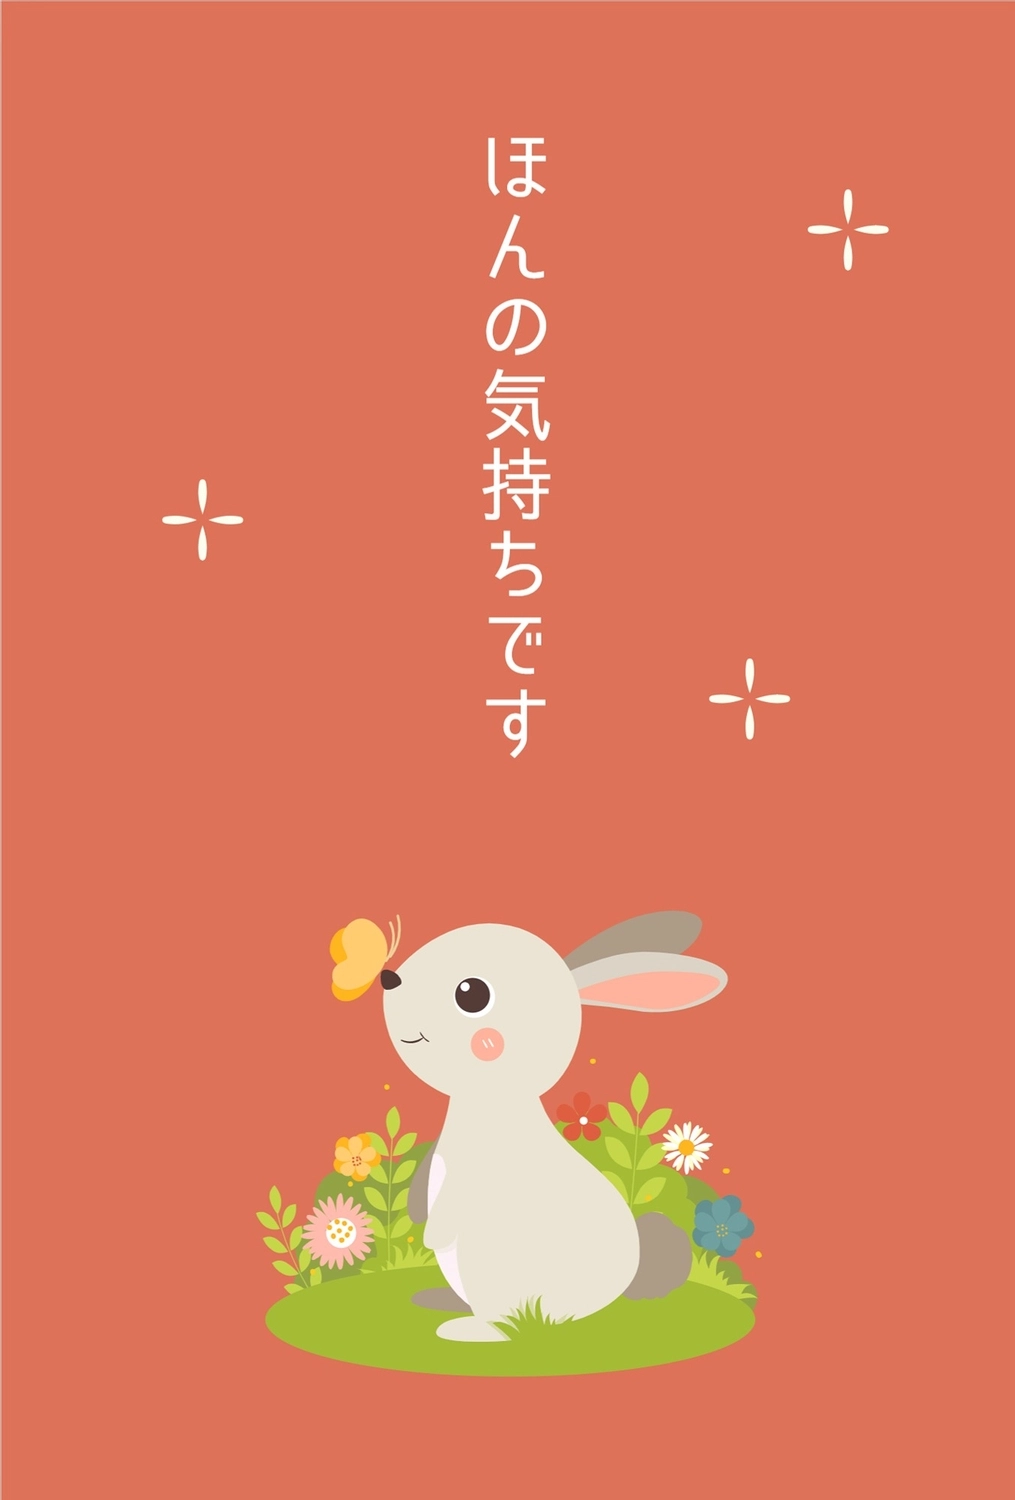 ウサギイラストのお礼カード, Sự minh họa, biết ơn, Cảm ơn bạn, thẻ tin nhắn mẫu